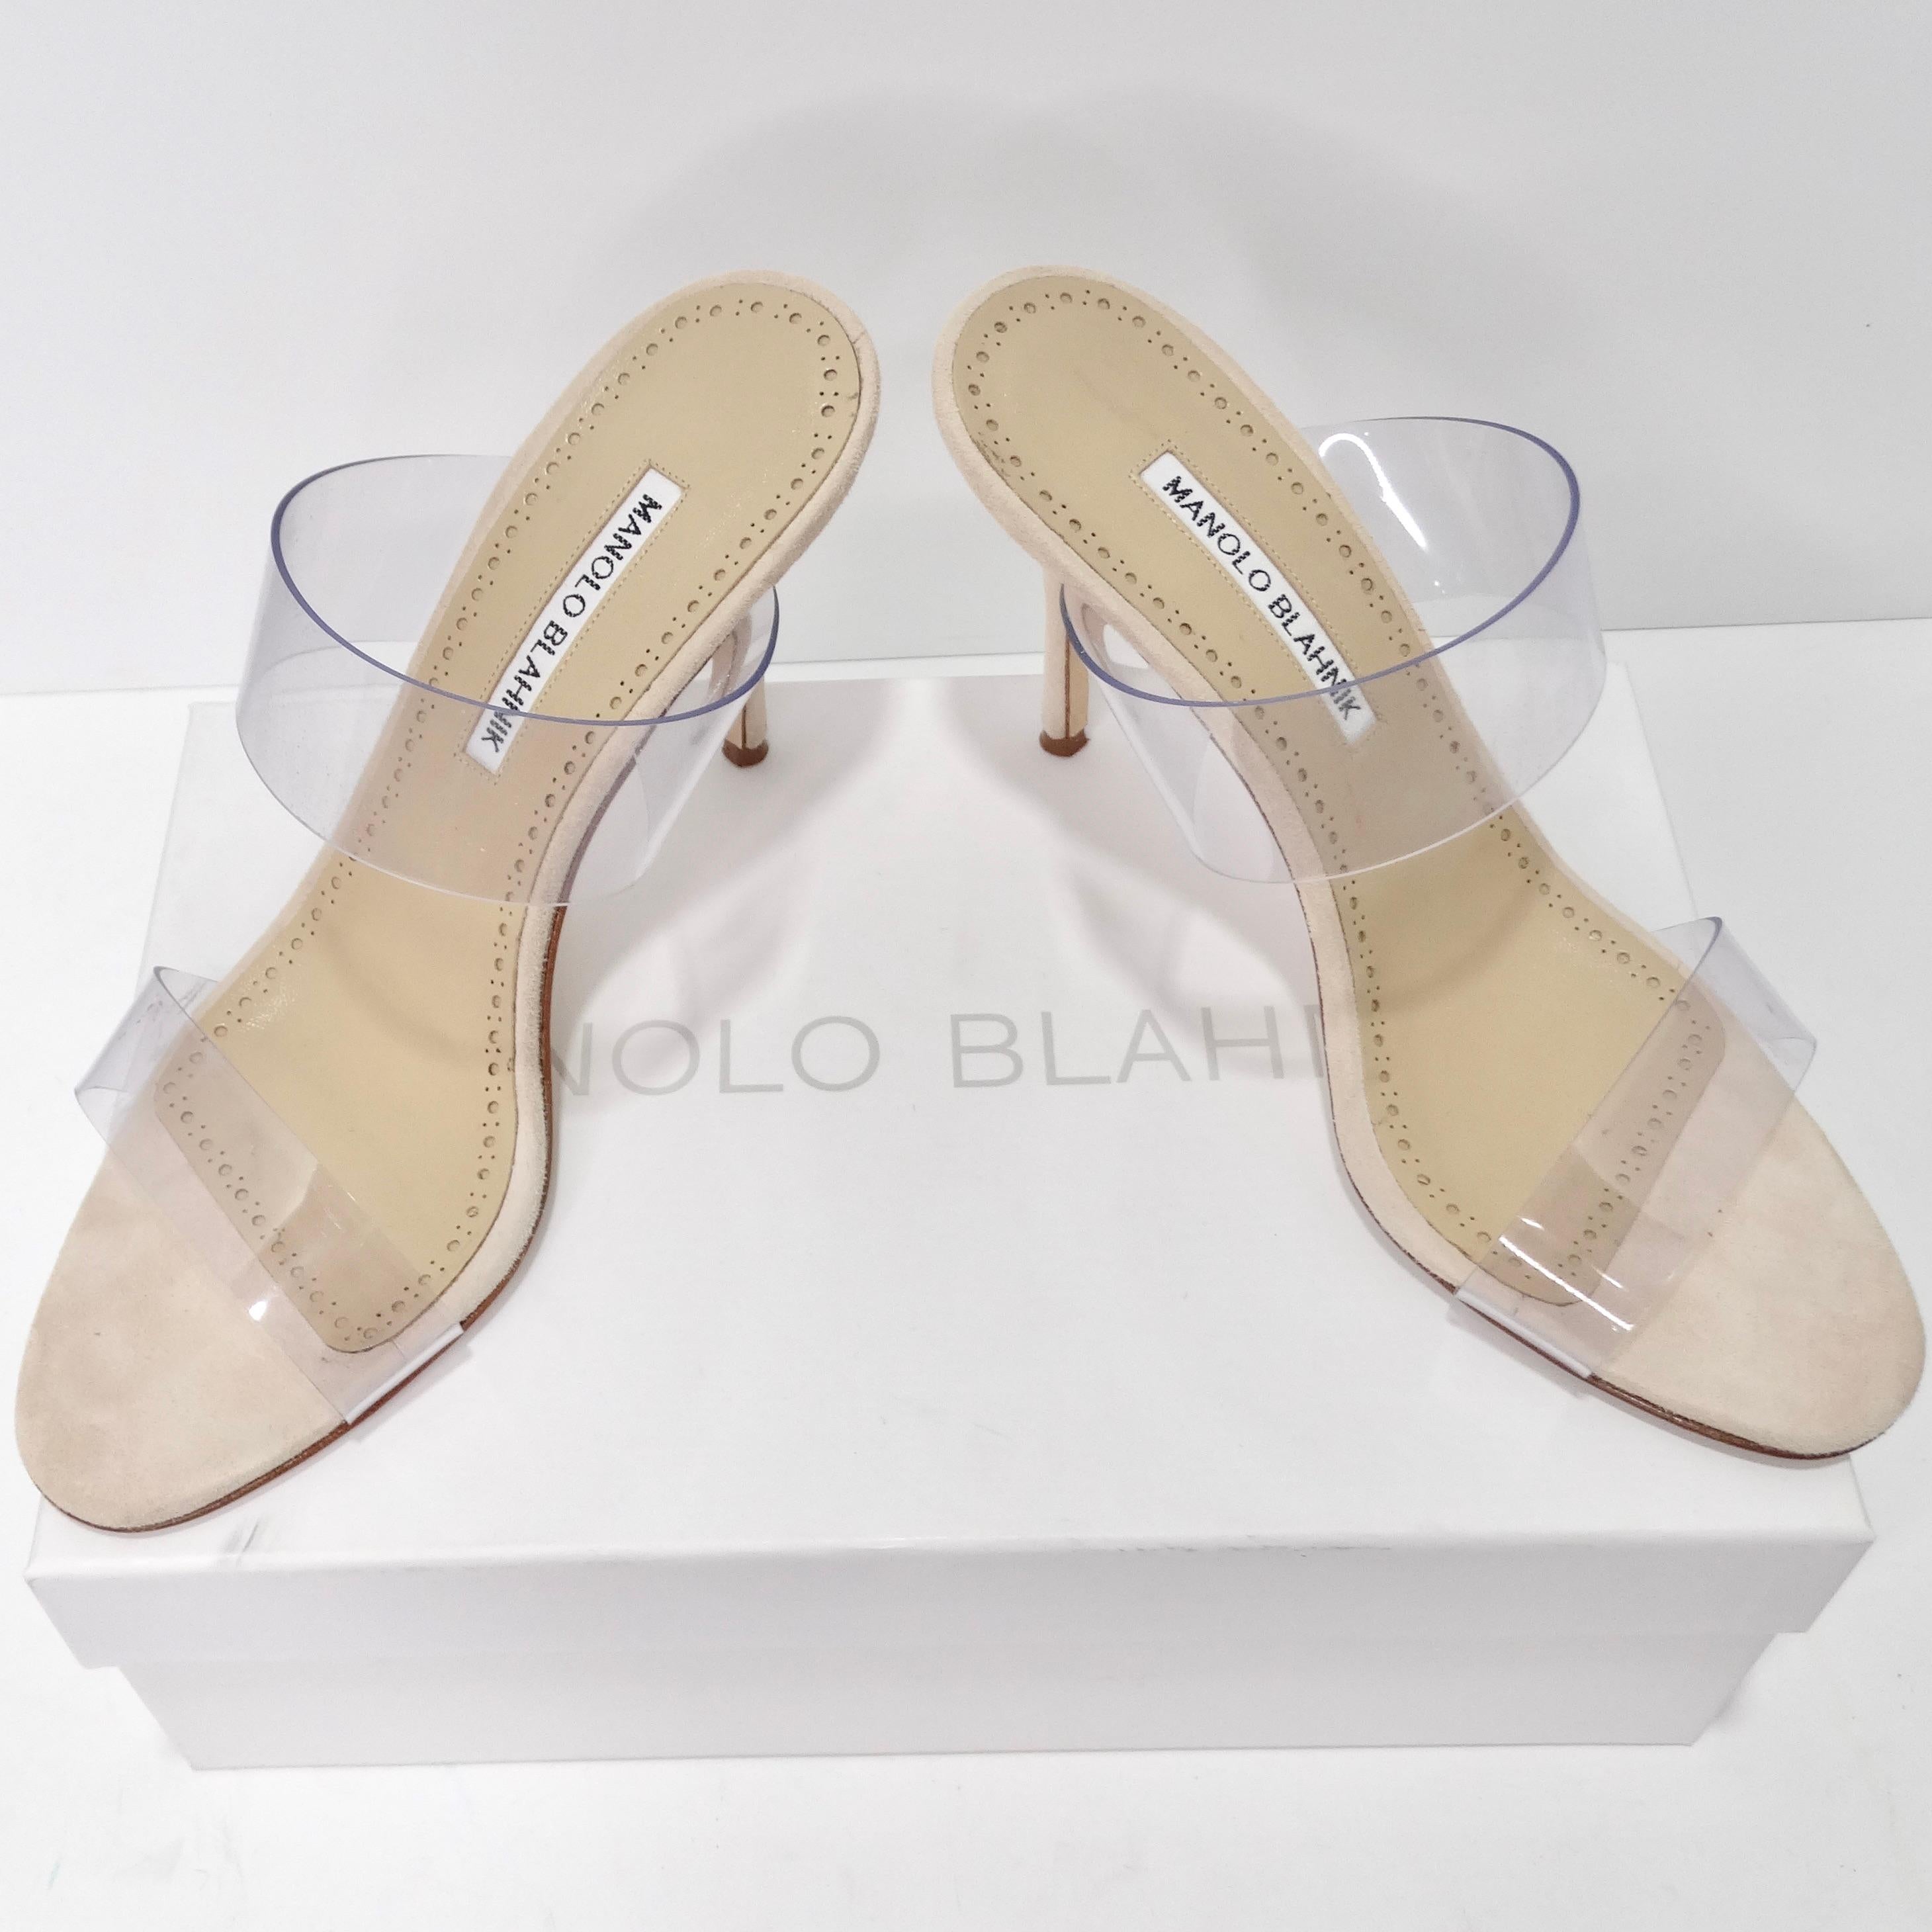 Voici les mules Manolo Blahnik Scolto Clear ECO PVC Open Toe, le choix ultime de chaussures polyvalentes pour celles qui veulent afficher leur pédicure et rester à la mode. Ces mules à talons hauts incarnent l'élégance contemporaine avec leur style